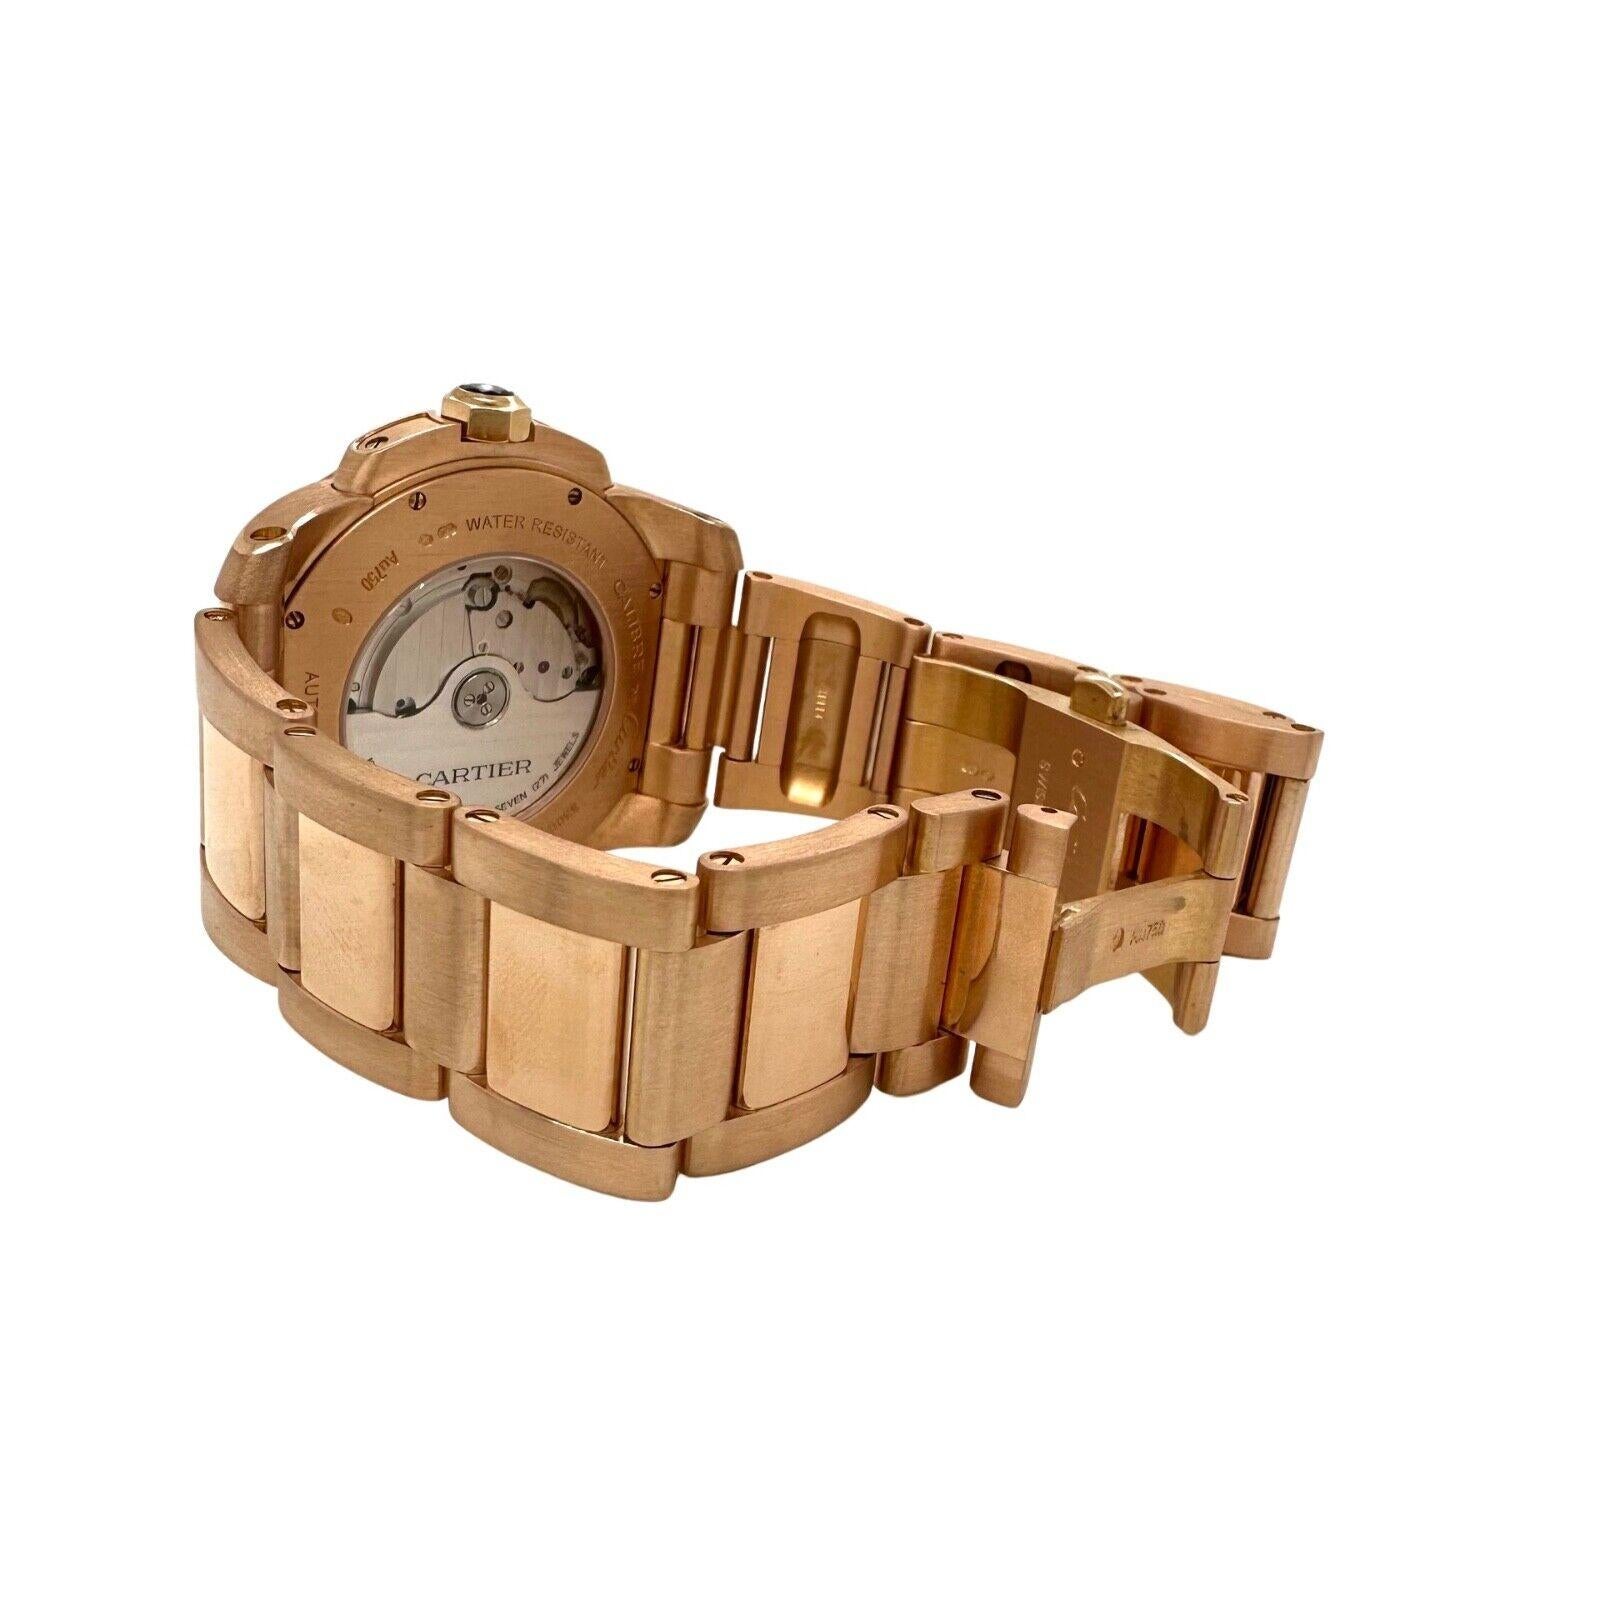 Modern Cartier Calibre de Cartier 42mm Watch in 18k Rose Gold REF W7100018